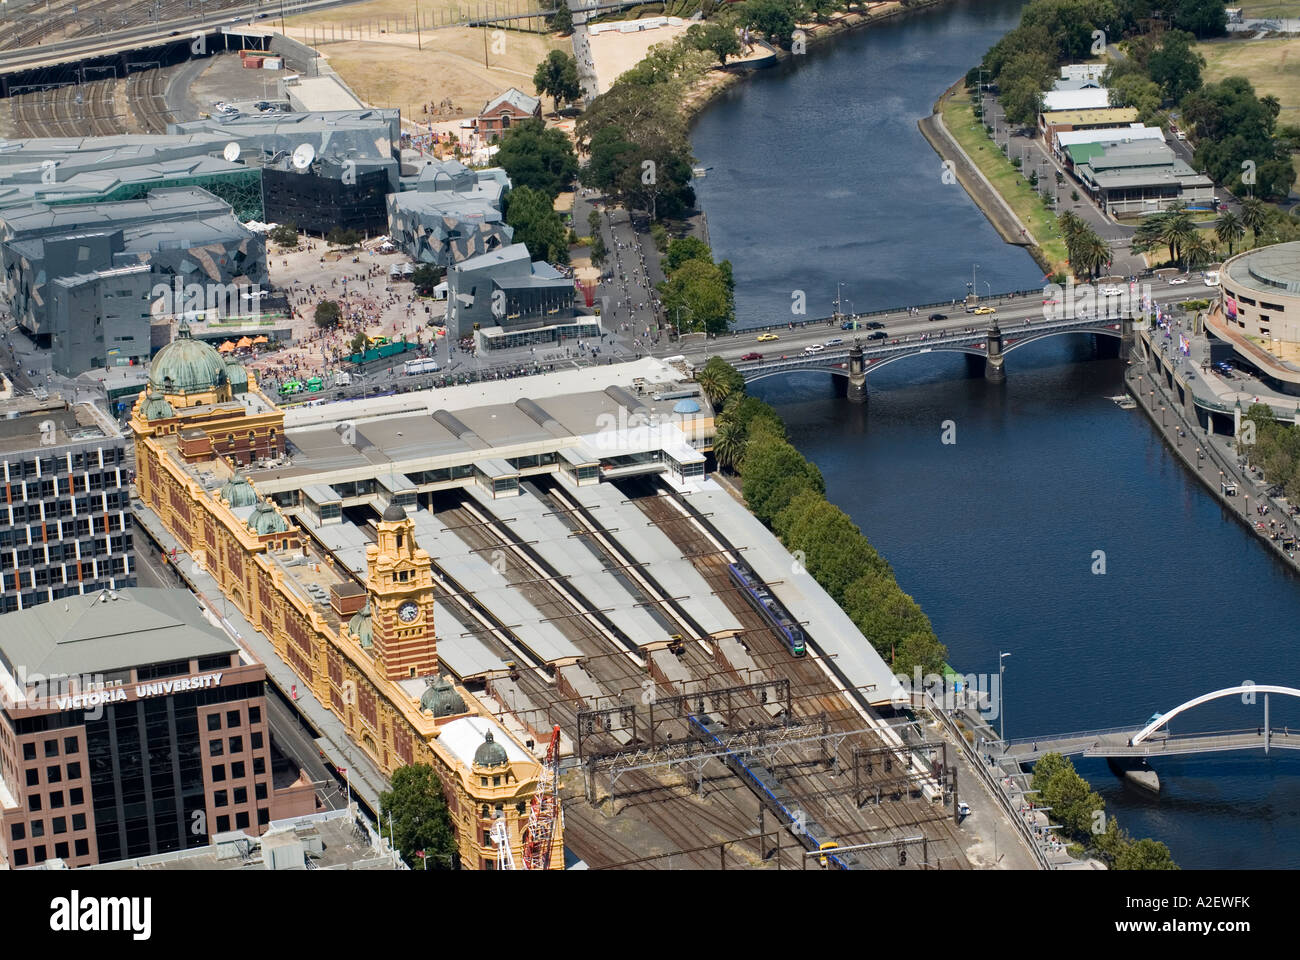 La gare de Flinders Street et de la rivière Yarra vue de Melbourne Observation Deck le Rialto Victoria Australie Banque D'Images